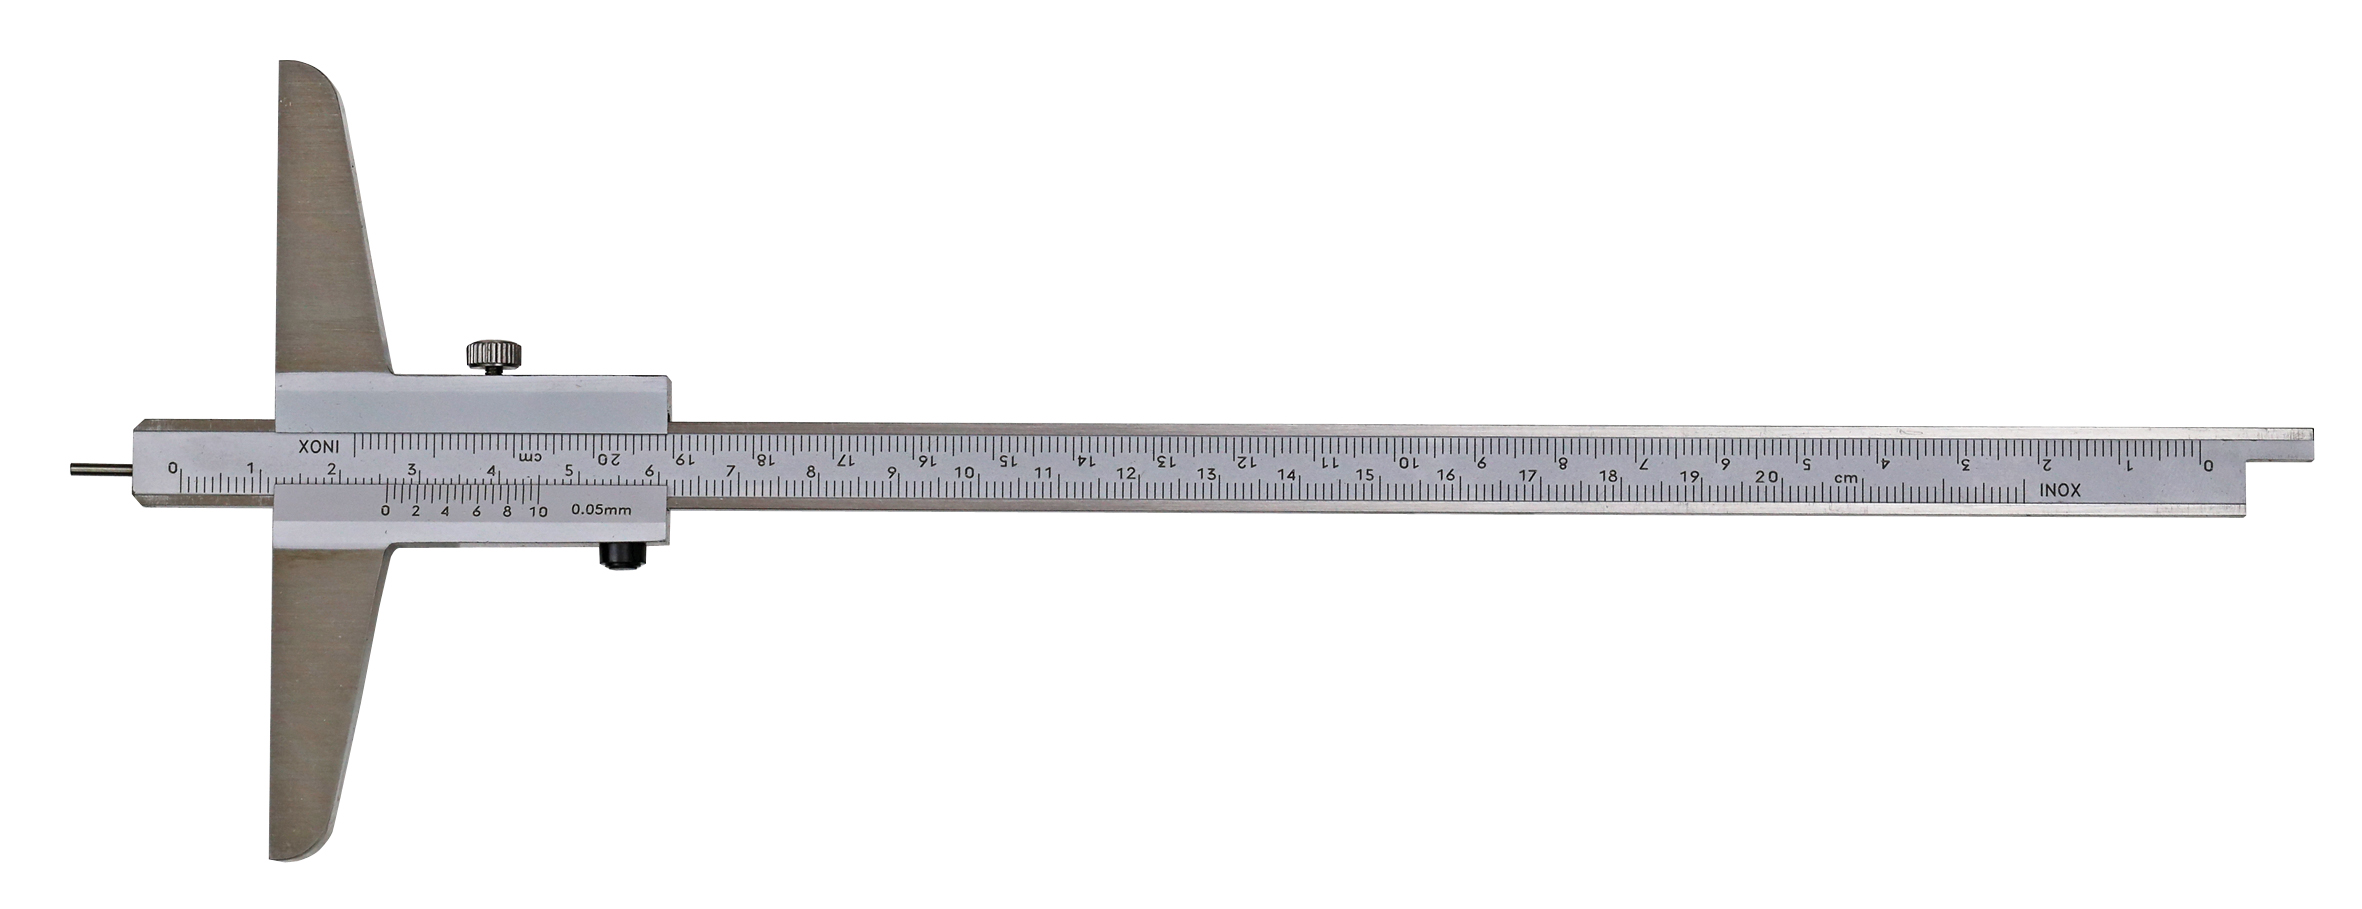 Tiefenmessschieber mit rundem Messstift DIN 862 Messbereich 200mm Tiefenmesser 